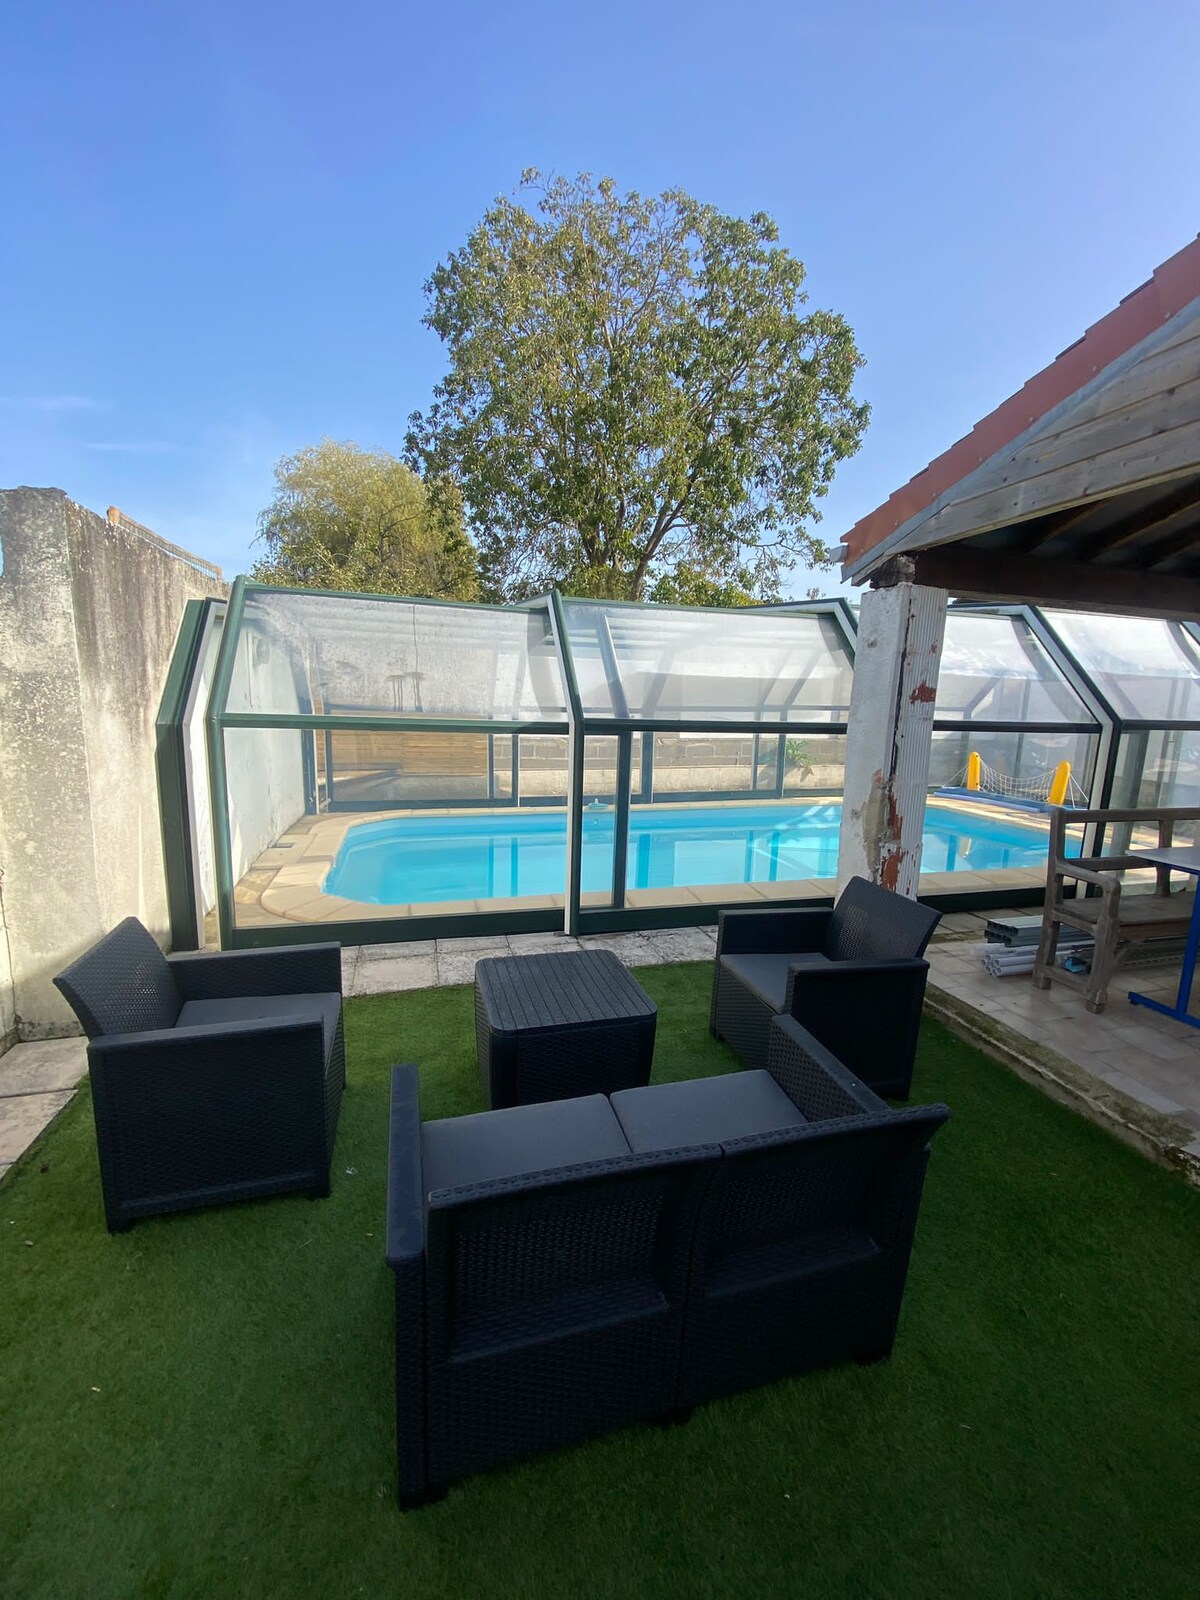 Maison avec piscine couverte